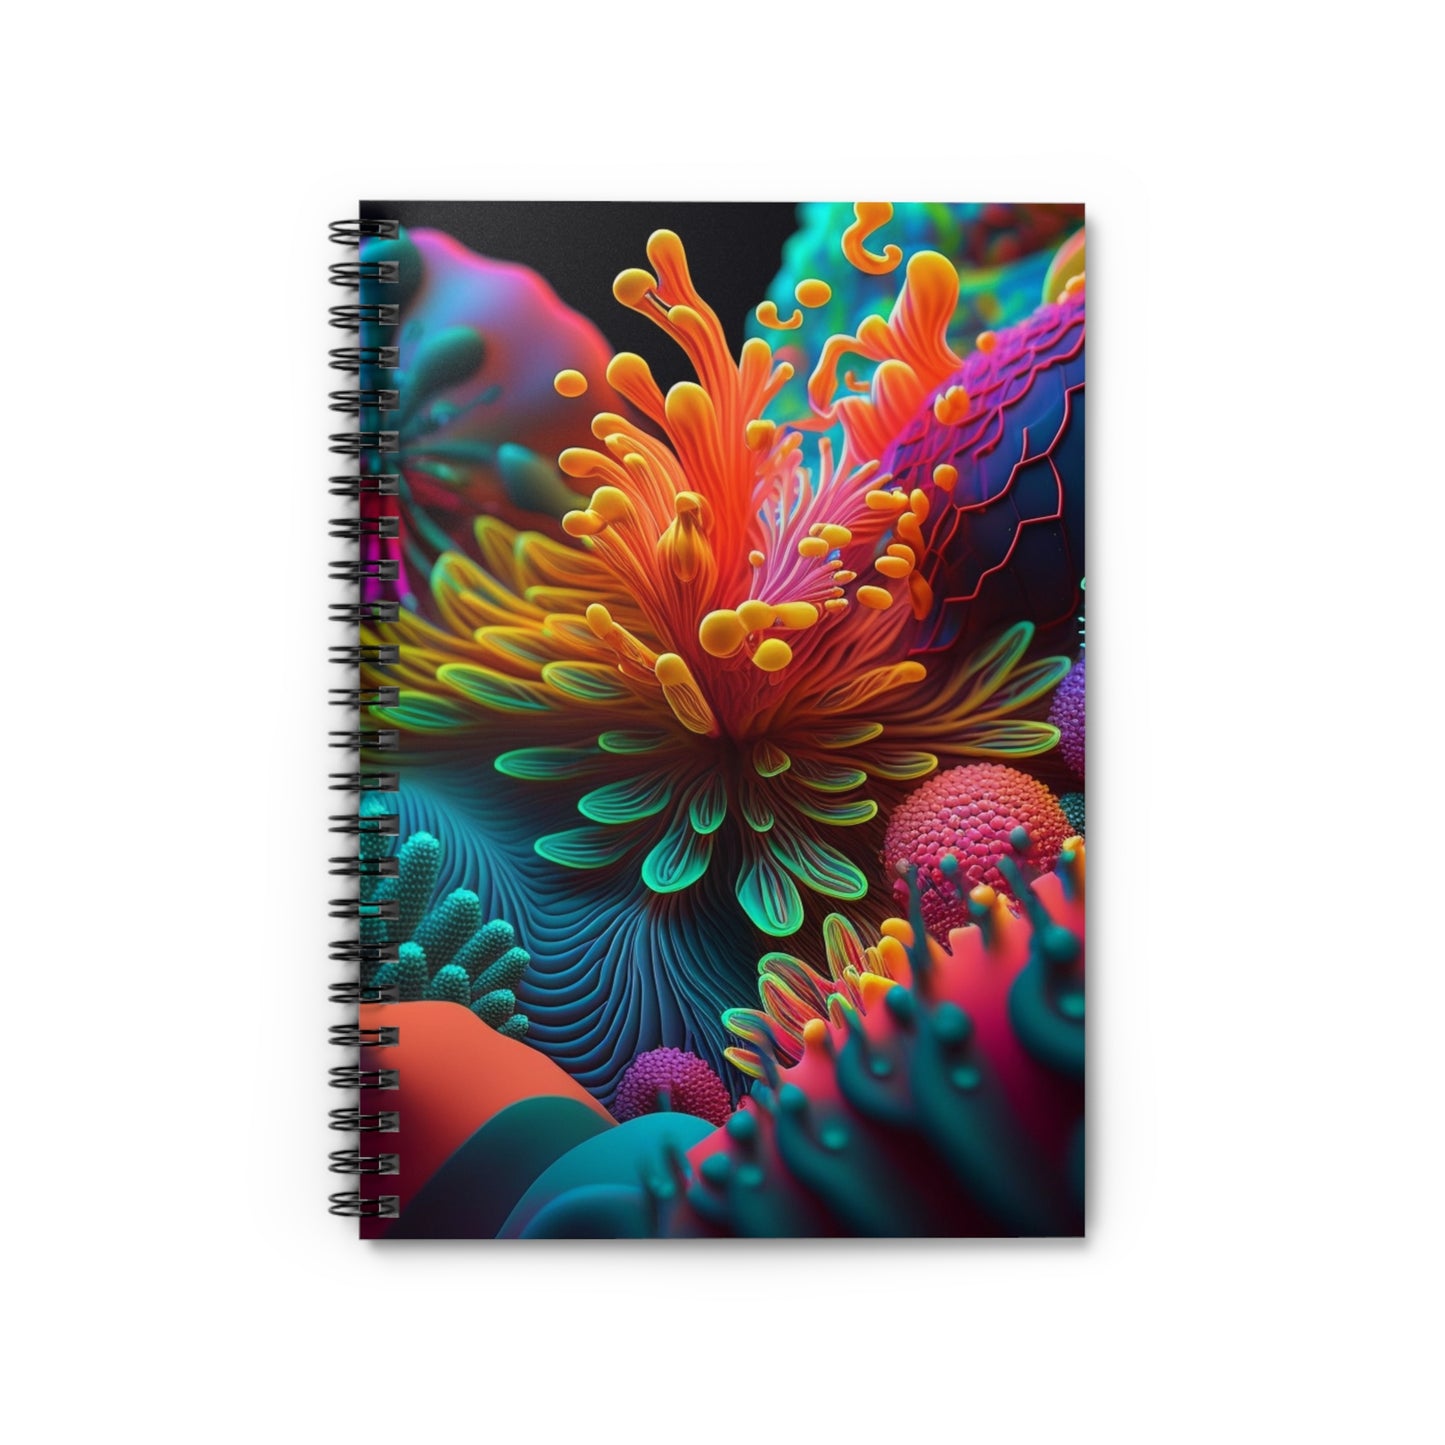 Spiral Notebook - Ruled Line Ocean Life Macro 3